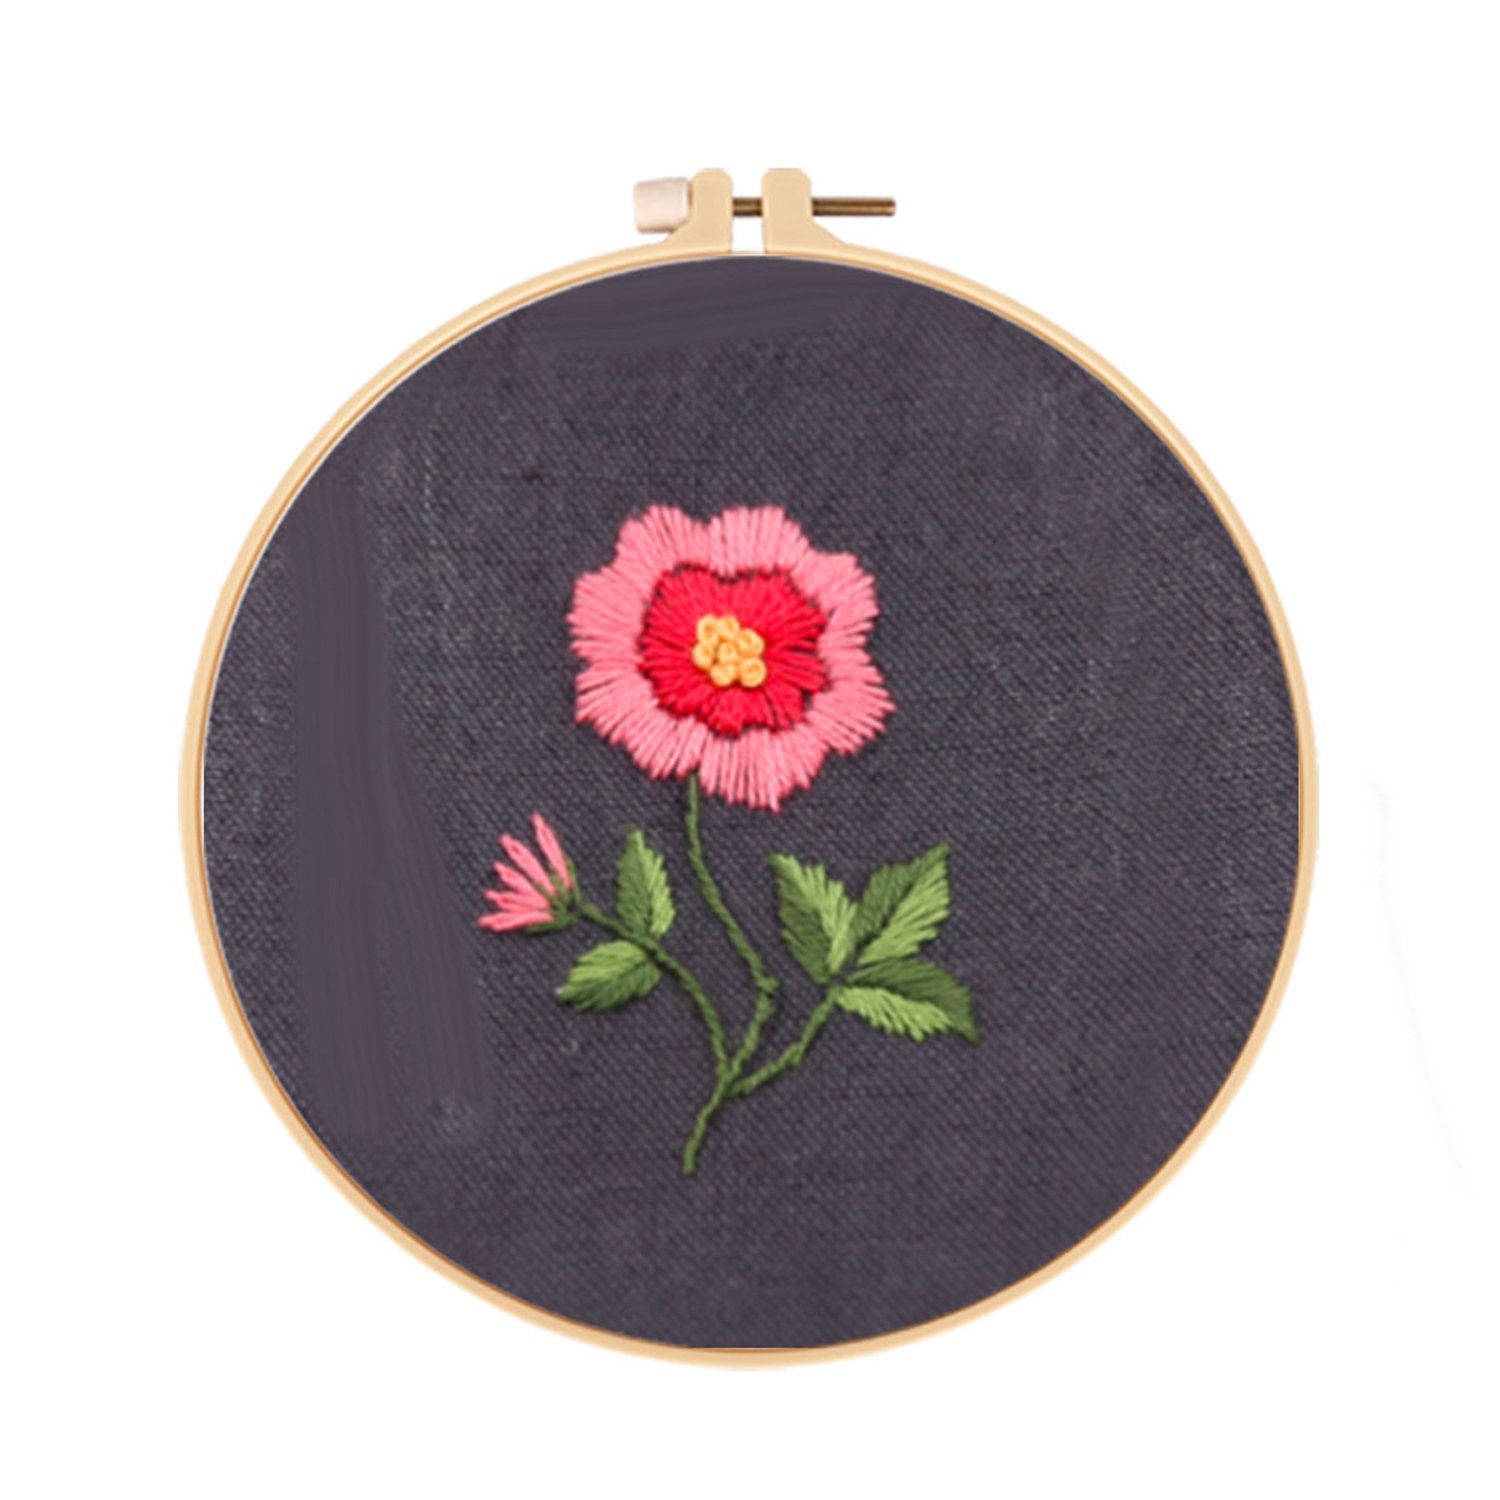 Embroidery Starter Kit Cross stitch kit - Floral Pattern